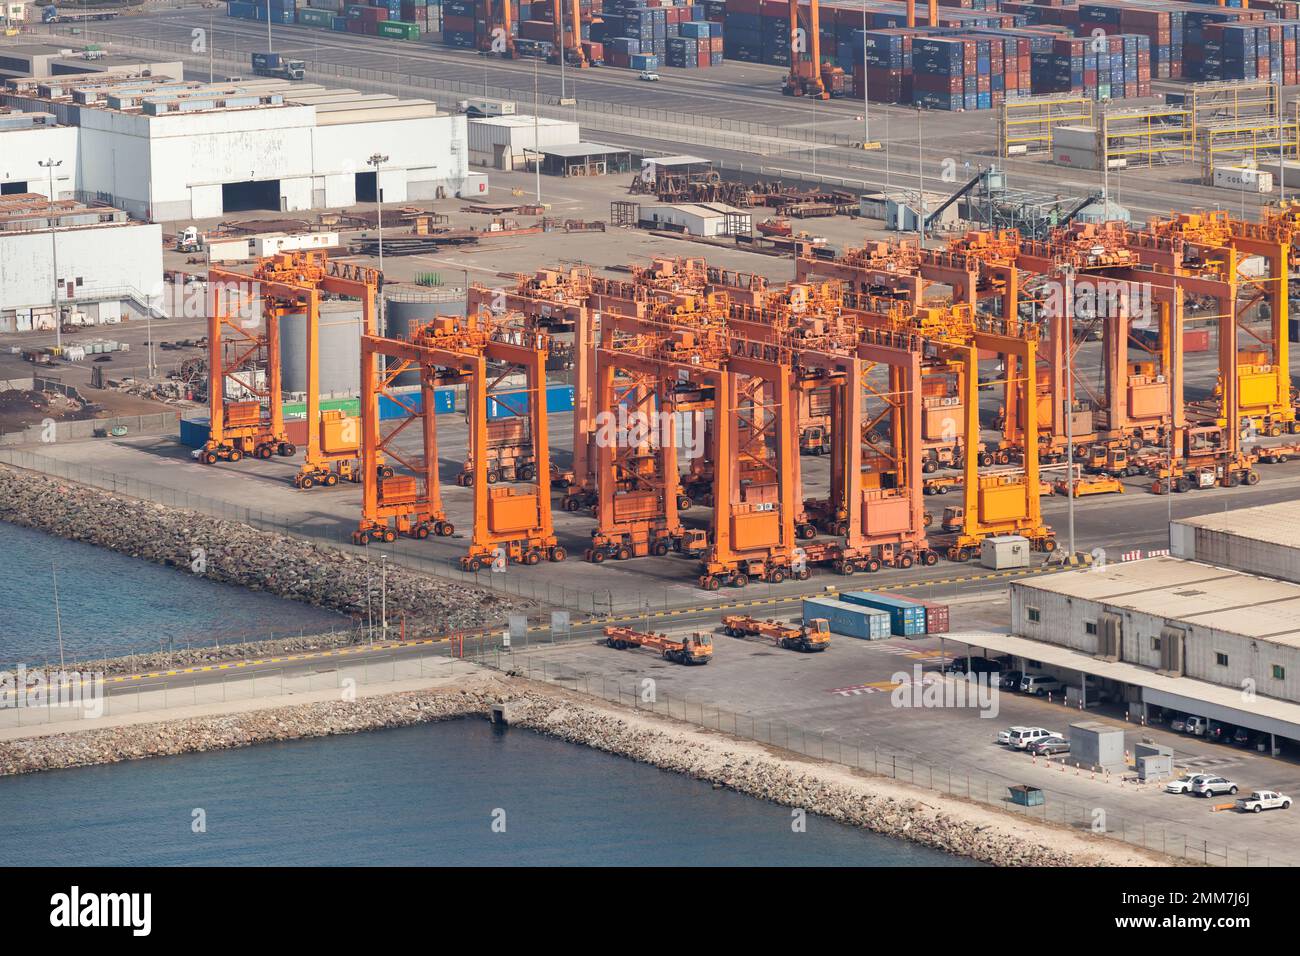 Jeddah, Arabia Saudita - 22 dicembre 2019: Gru a portale del porto marittimo islamico di Jeddah Foto Stock